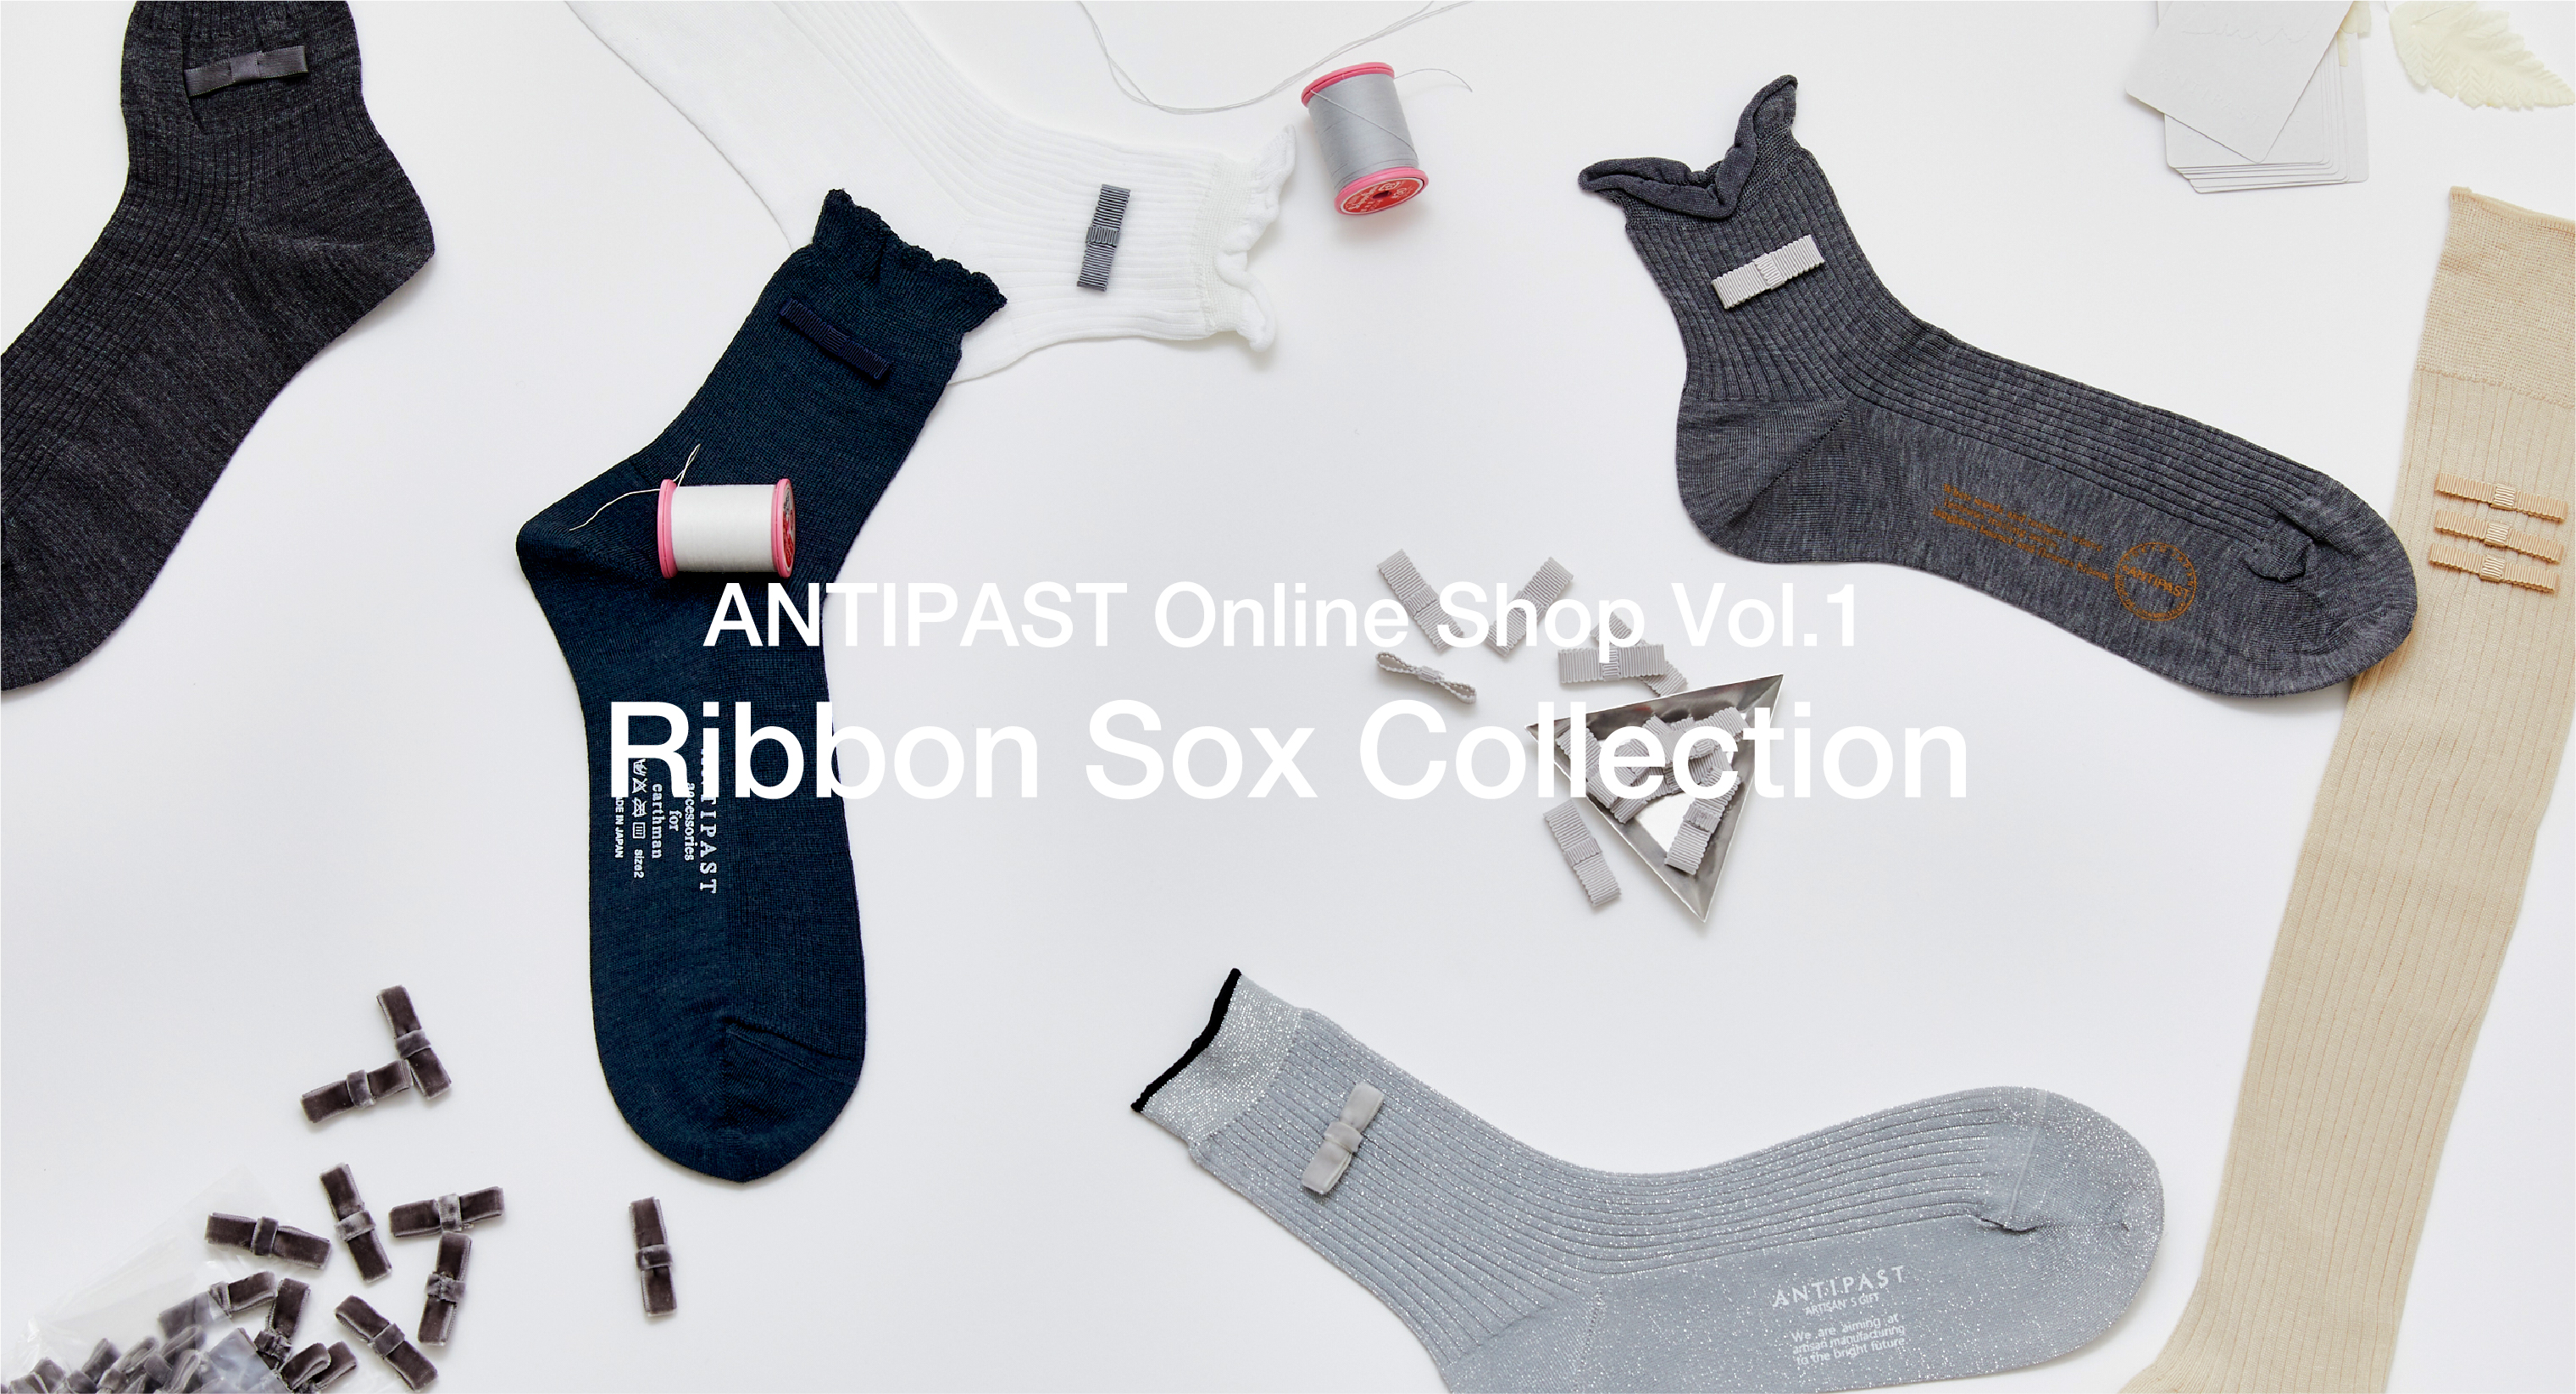 Ribbon Sox Collection